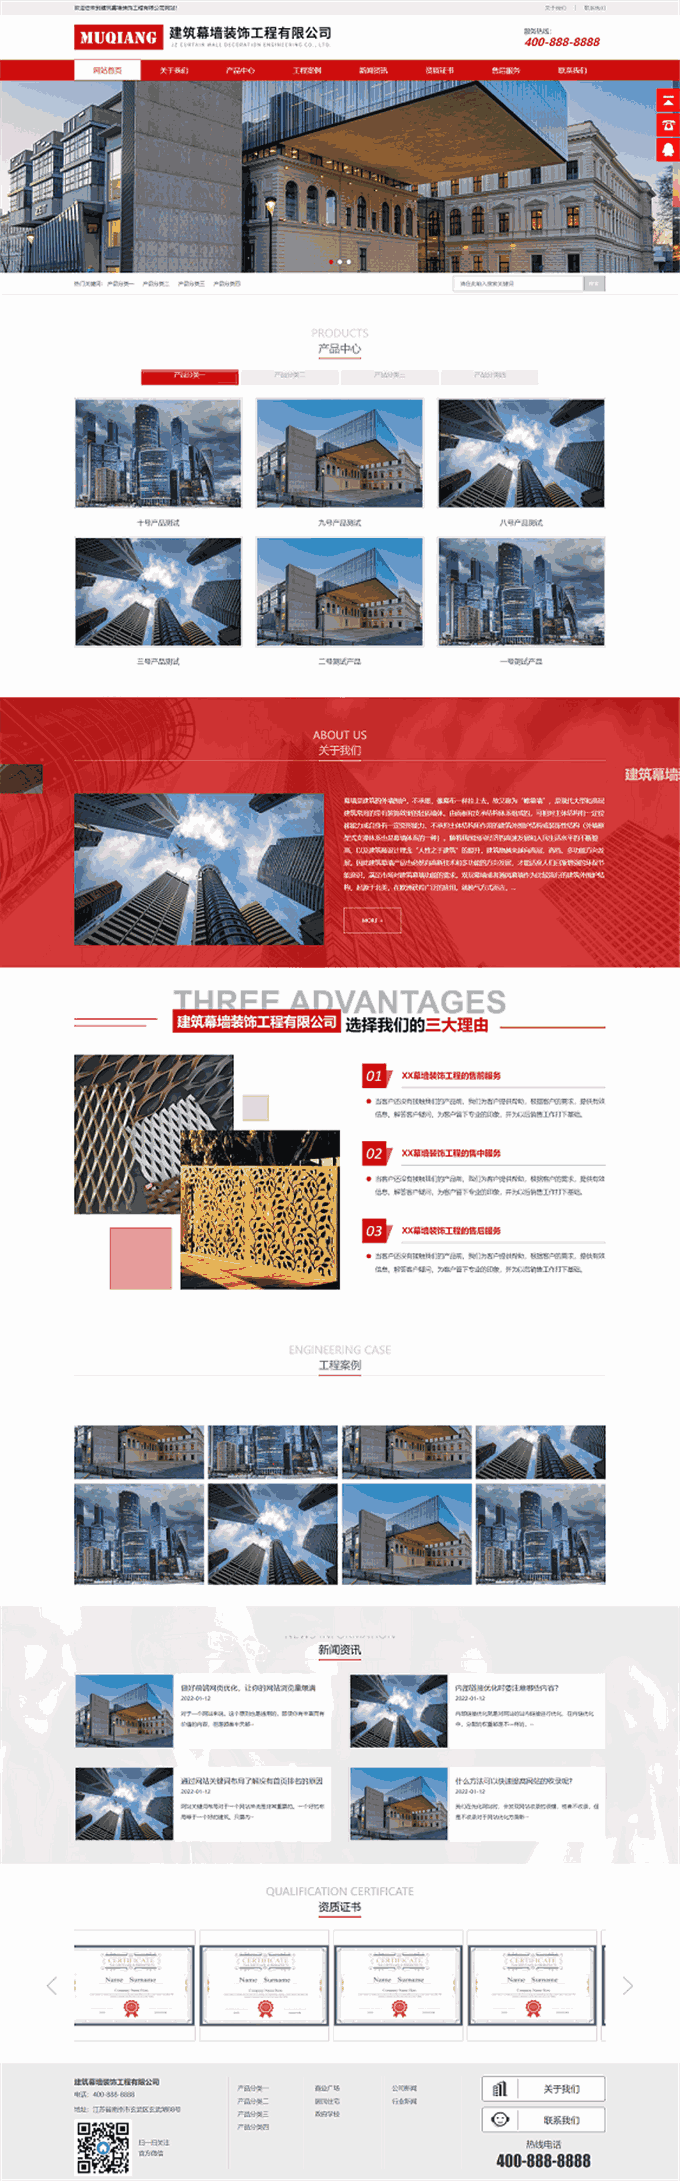 建筑幕墙装饰建筑装修工程公司网站WordPress模板首页图